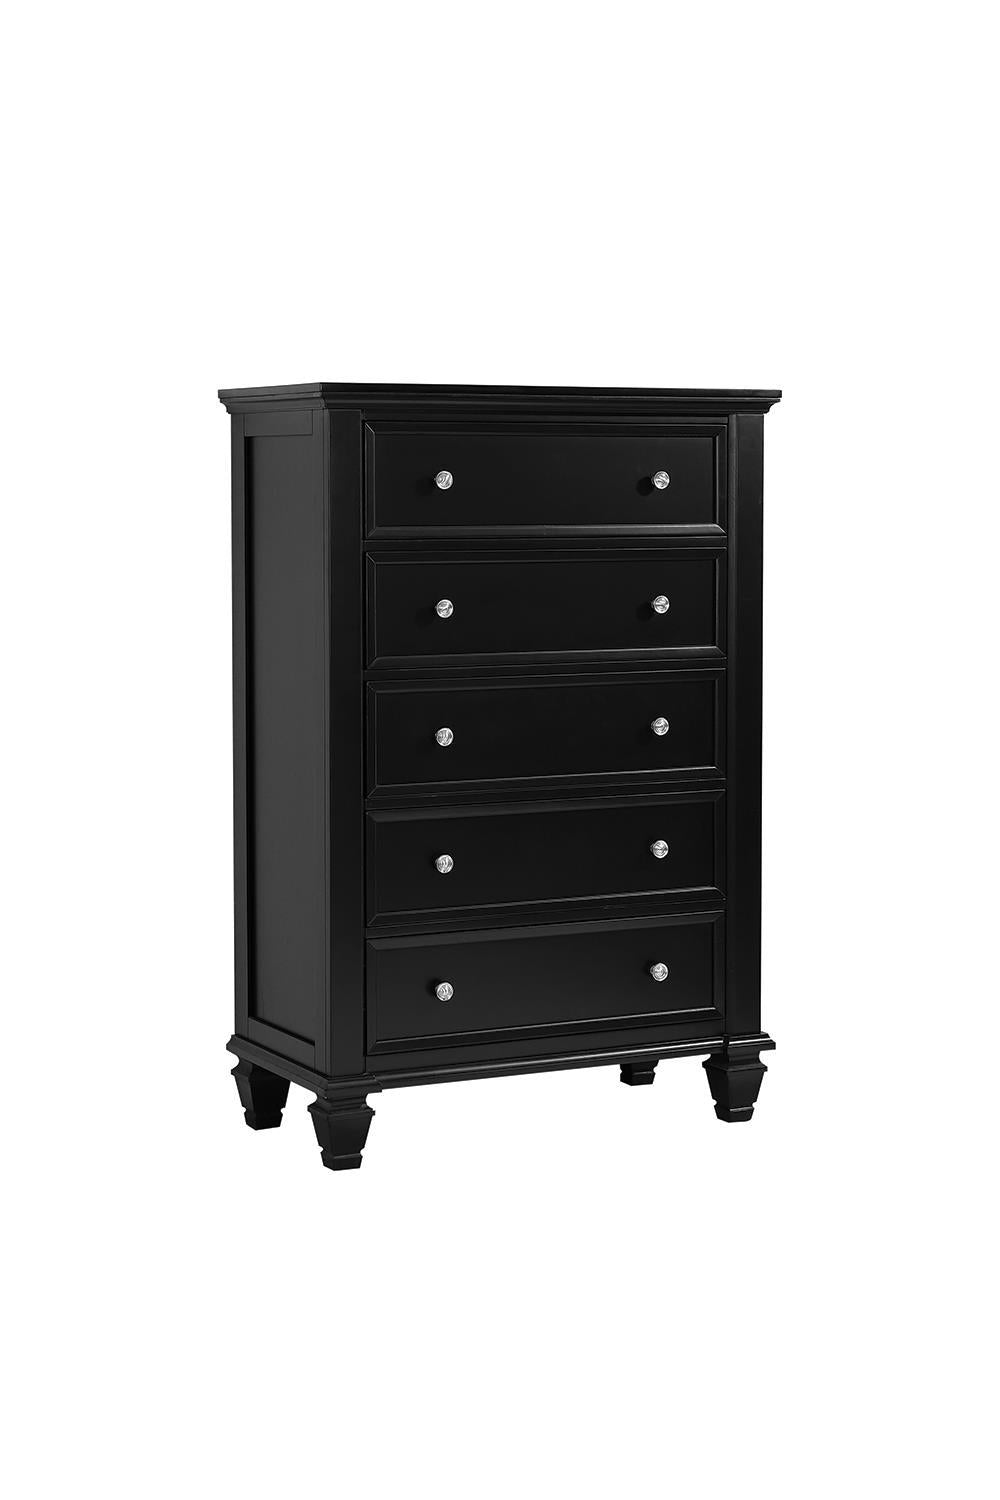 Sandy Beach 5-drawer Chest Black - Half Price Furniture